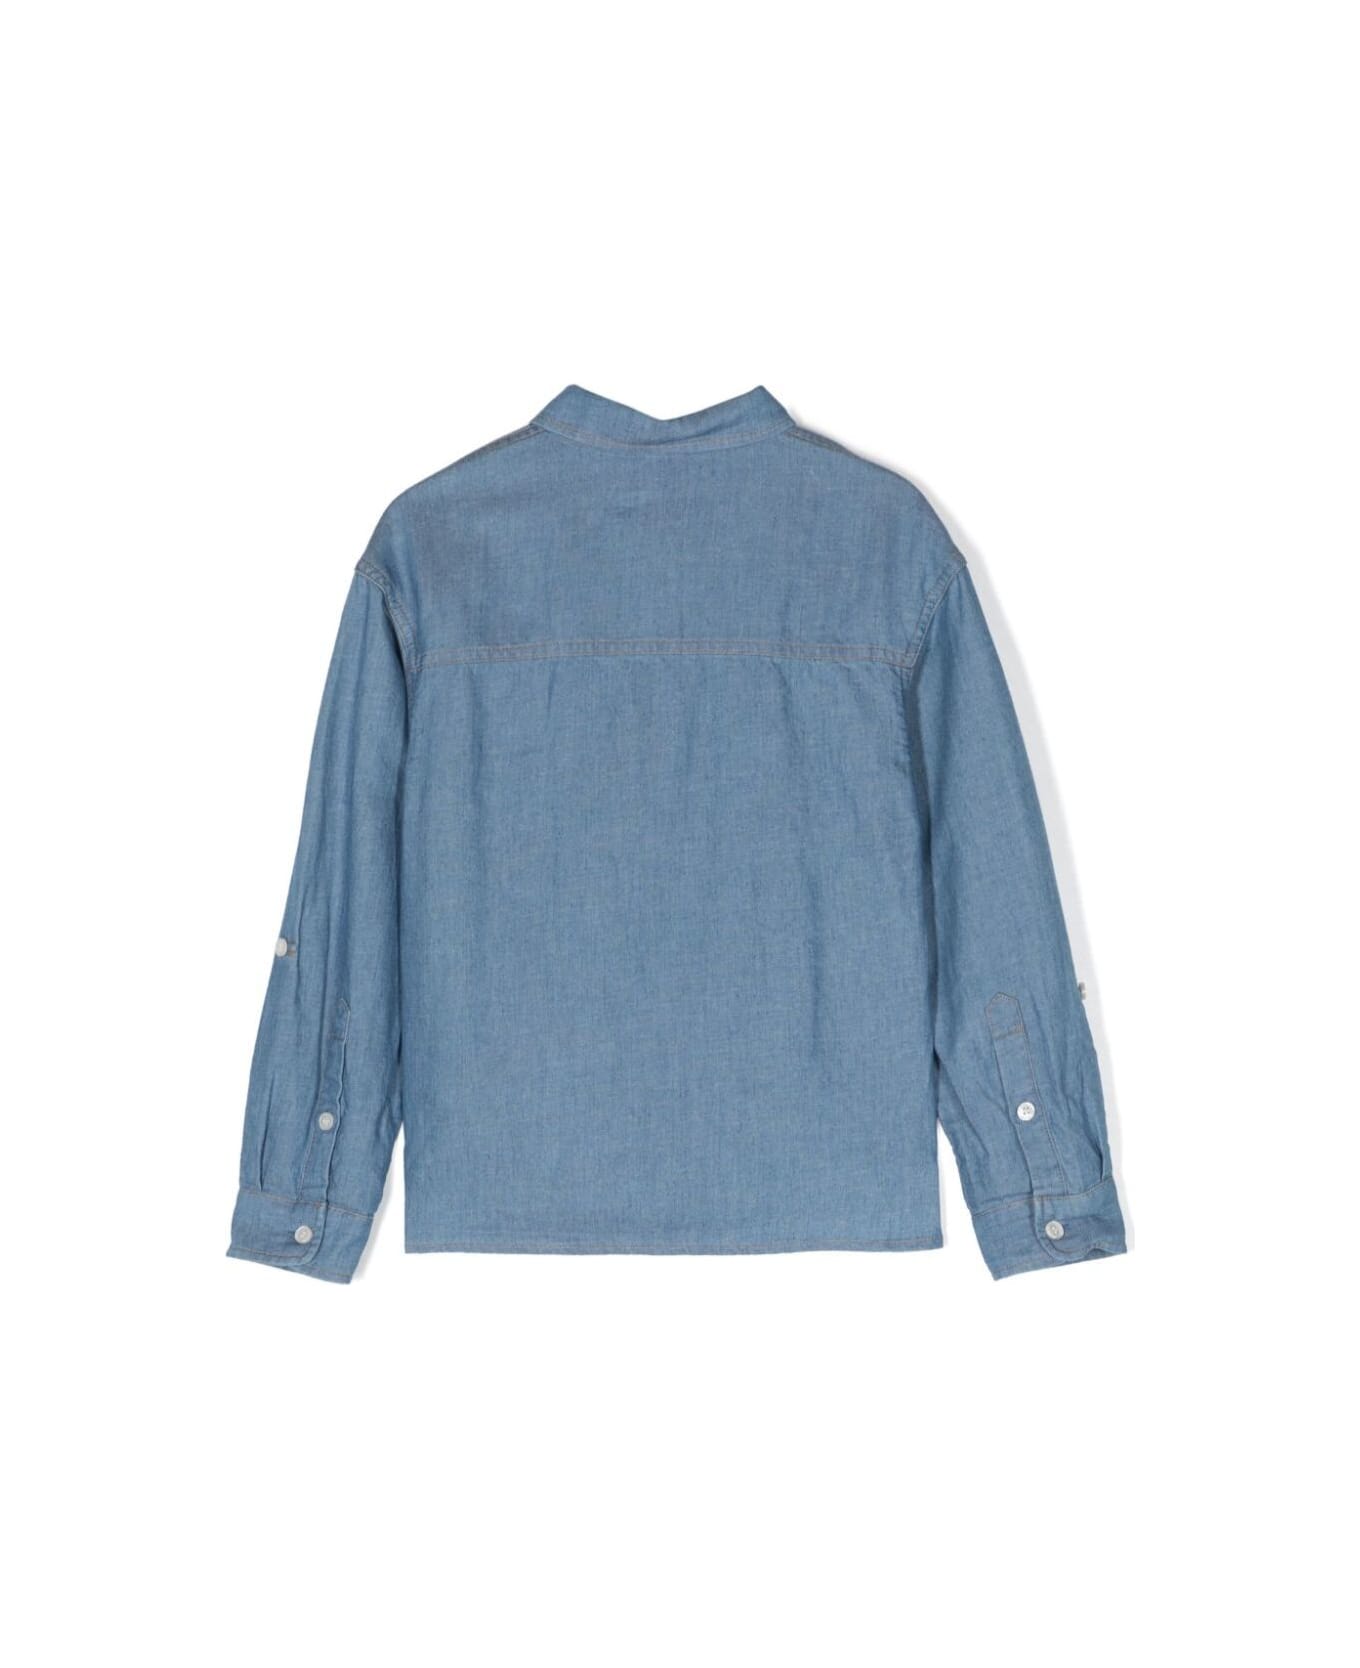 Moschino Shirt - Blu